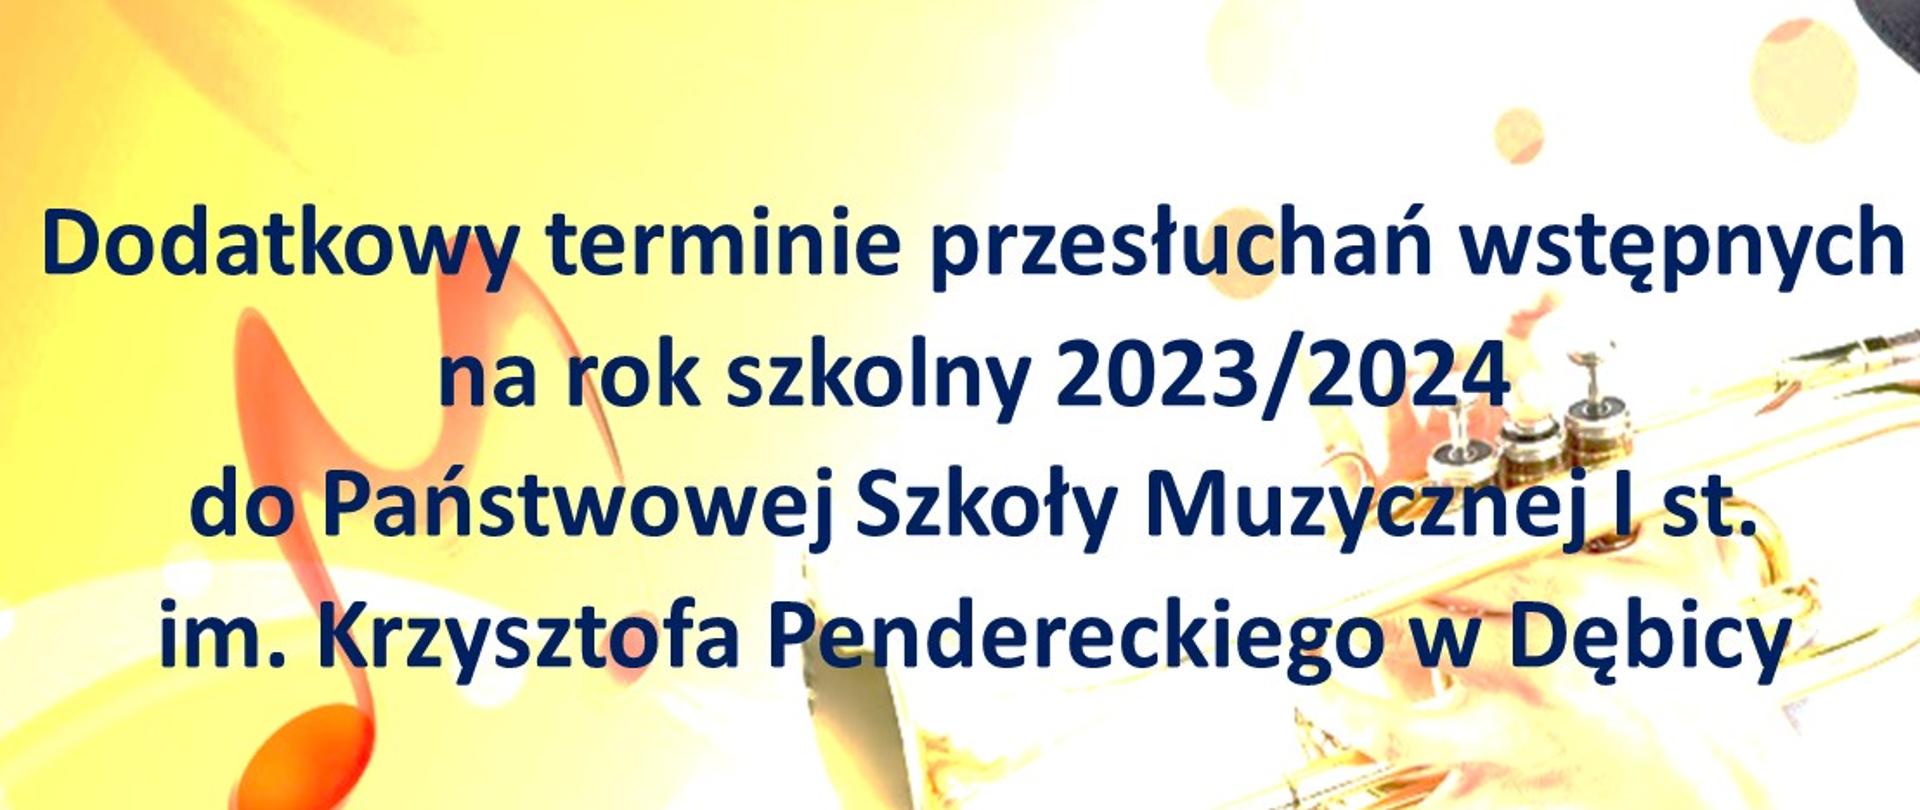 Plakat z informacją o dodatkowym terminie przesłuchań wstępnych na rok szkolny 2023/2024 do PSM I st. w Dębicy, w tle nuty oraz grający trębacz